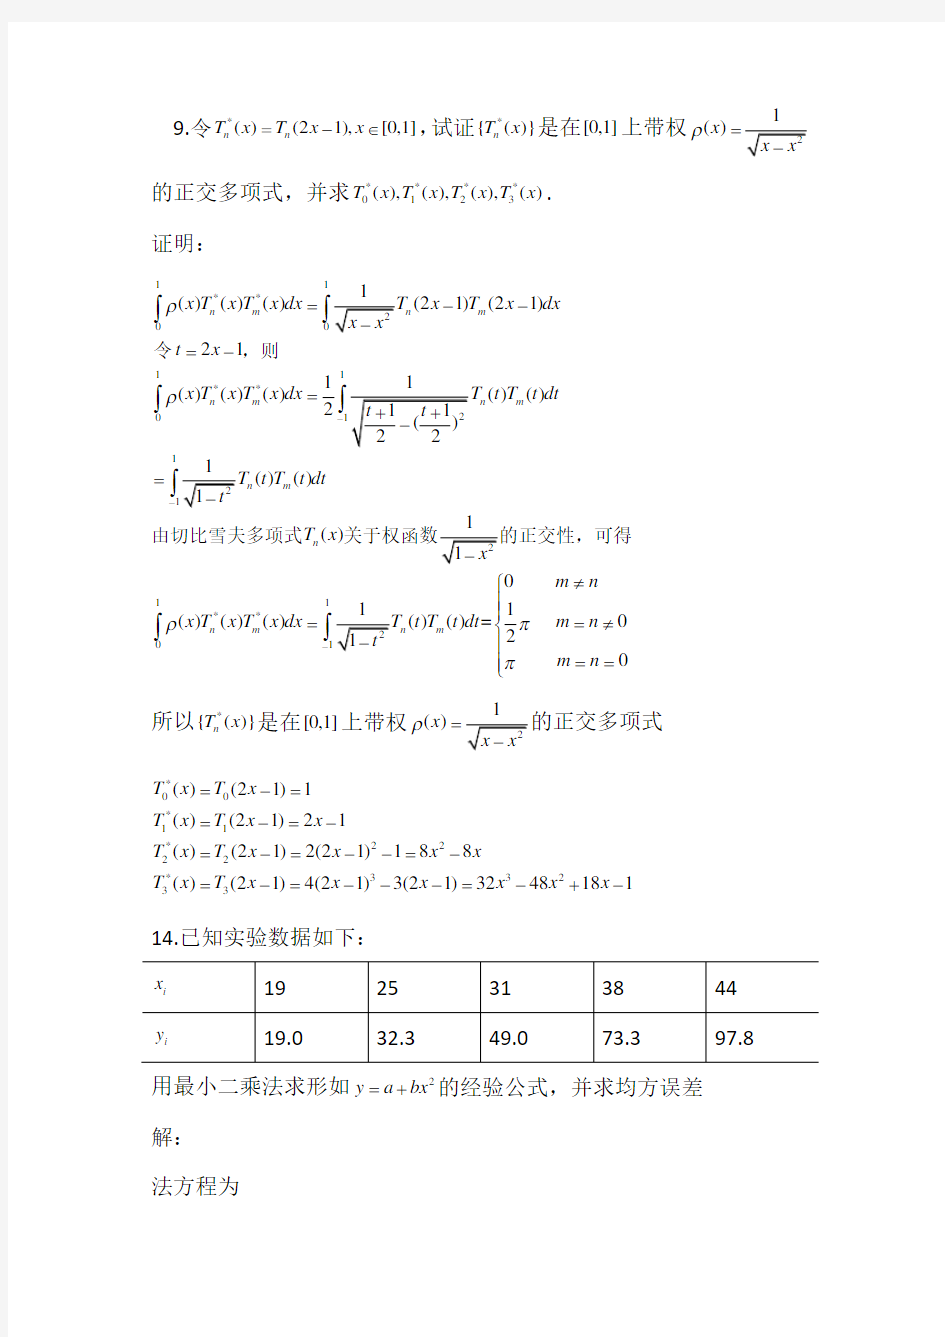 清华大学杨顶辉数值分析第6次作业